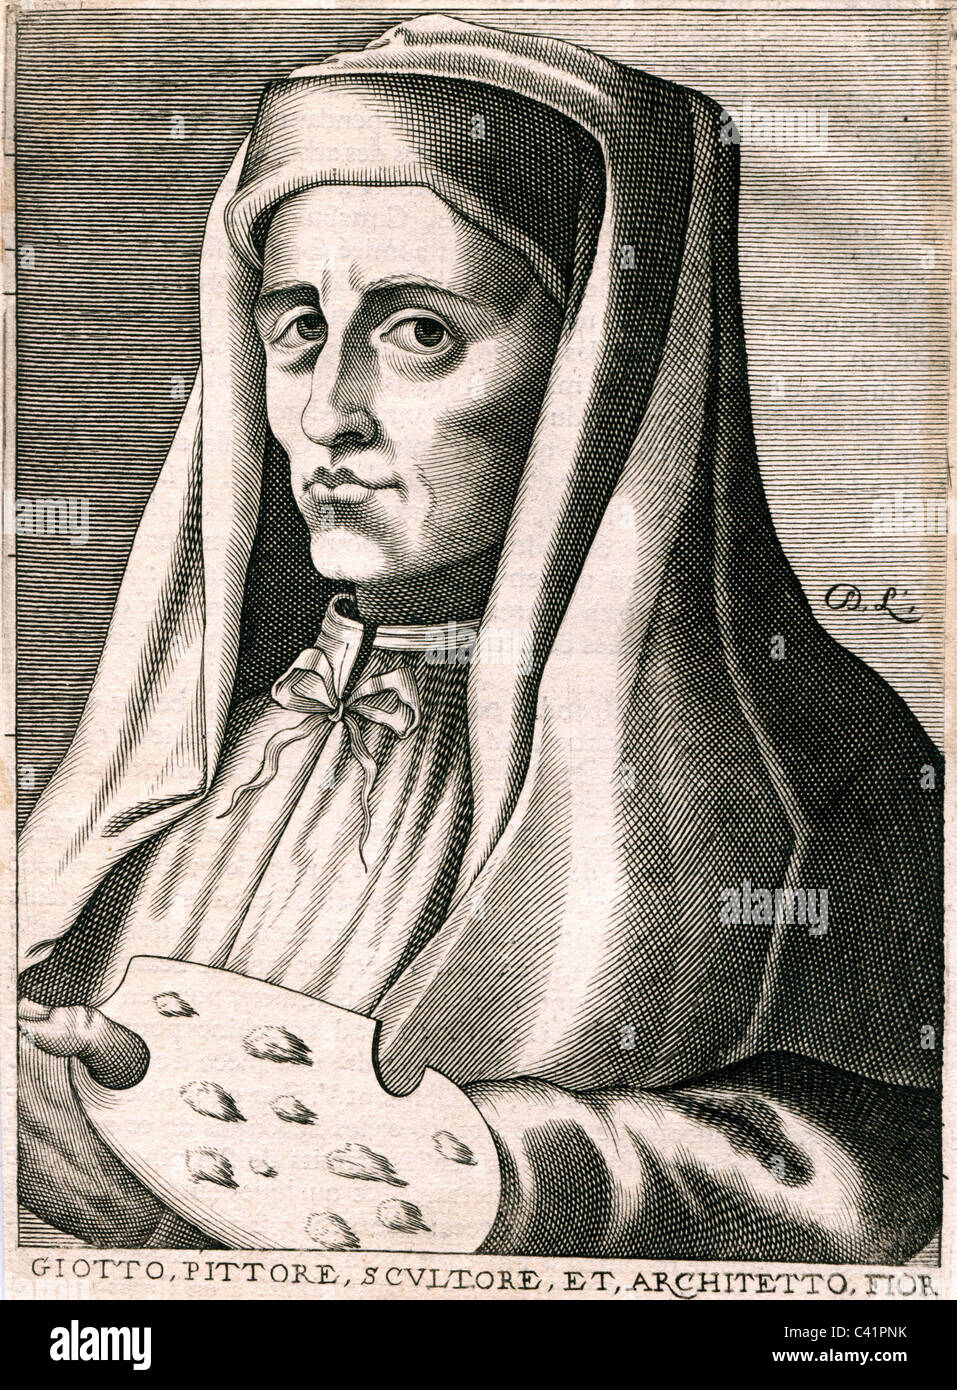 Giotto di Bondone, 1266 - 8.1.1337, Italian artist (painter), portrait